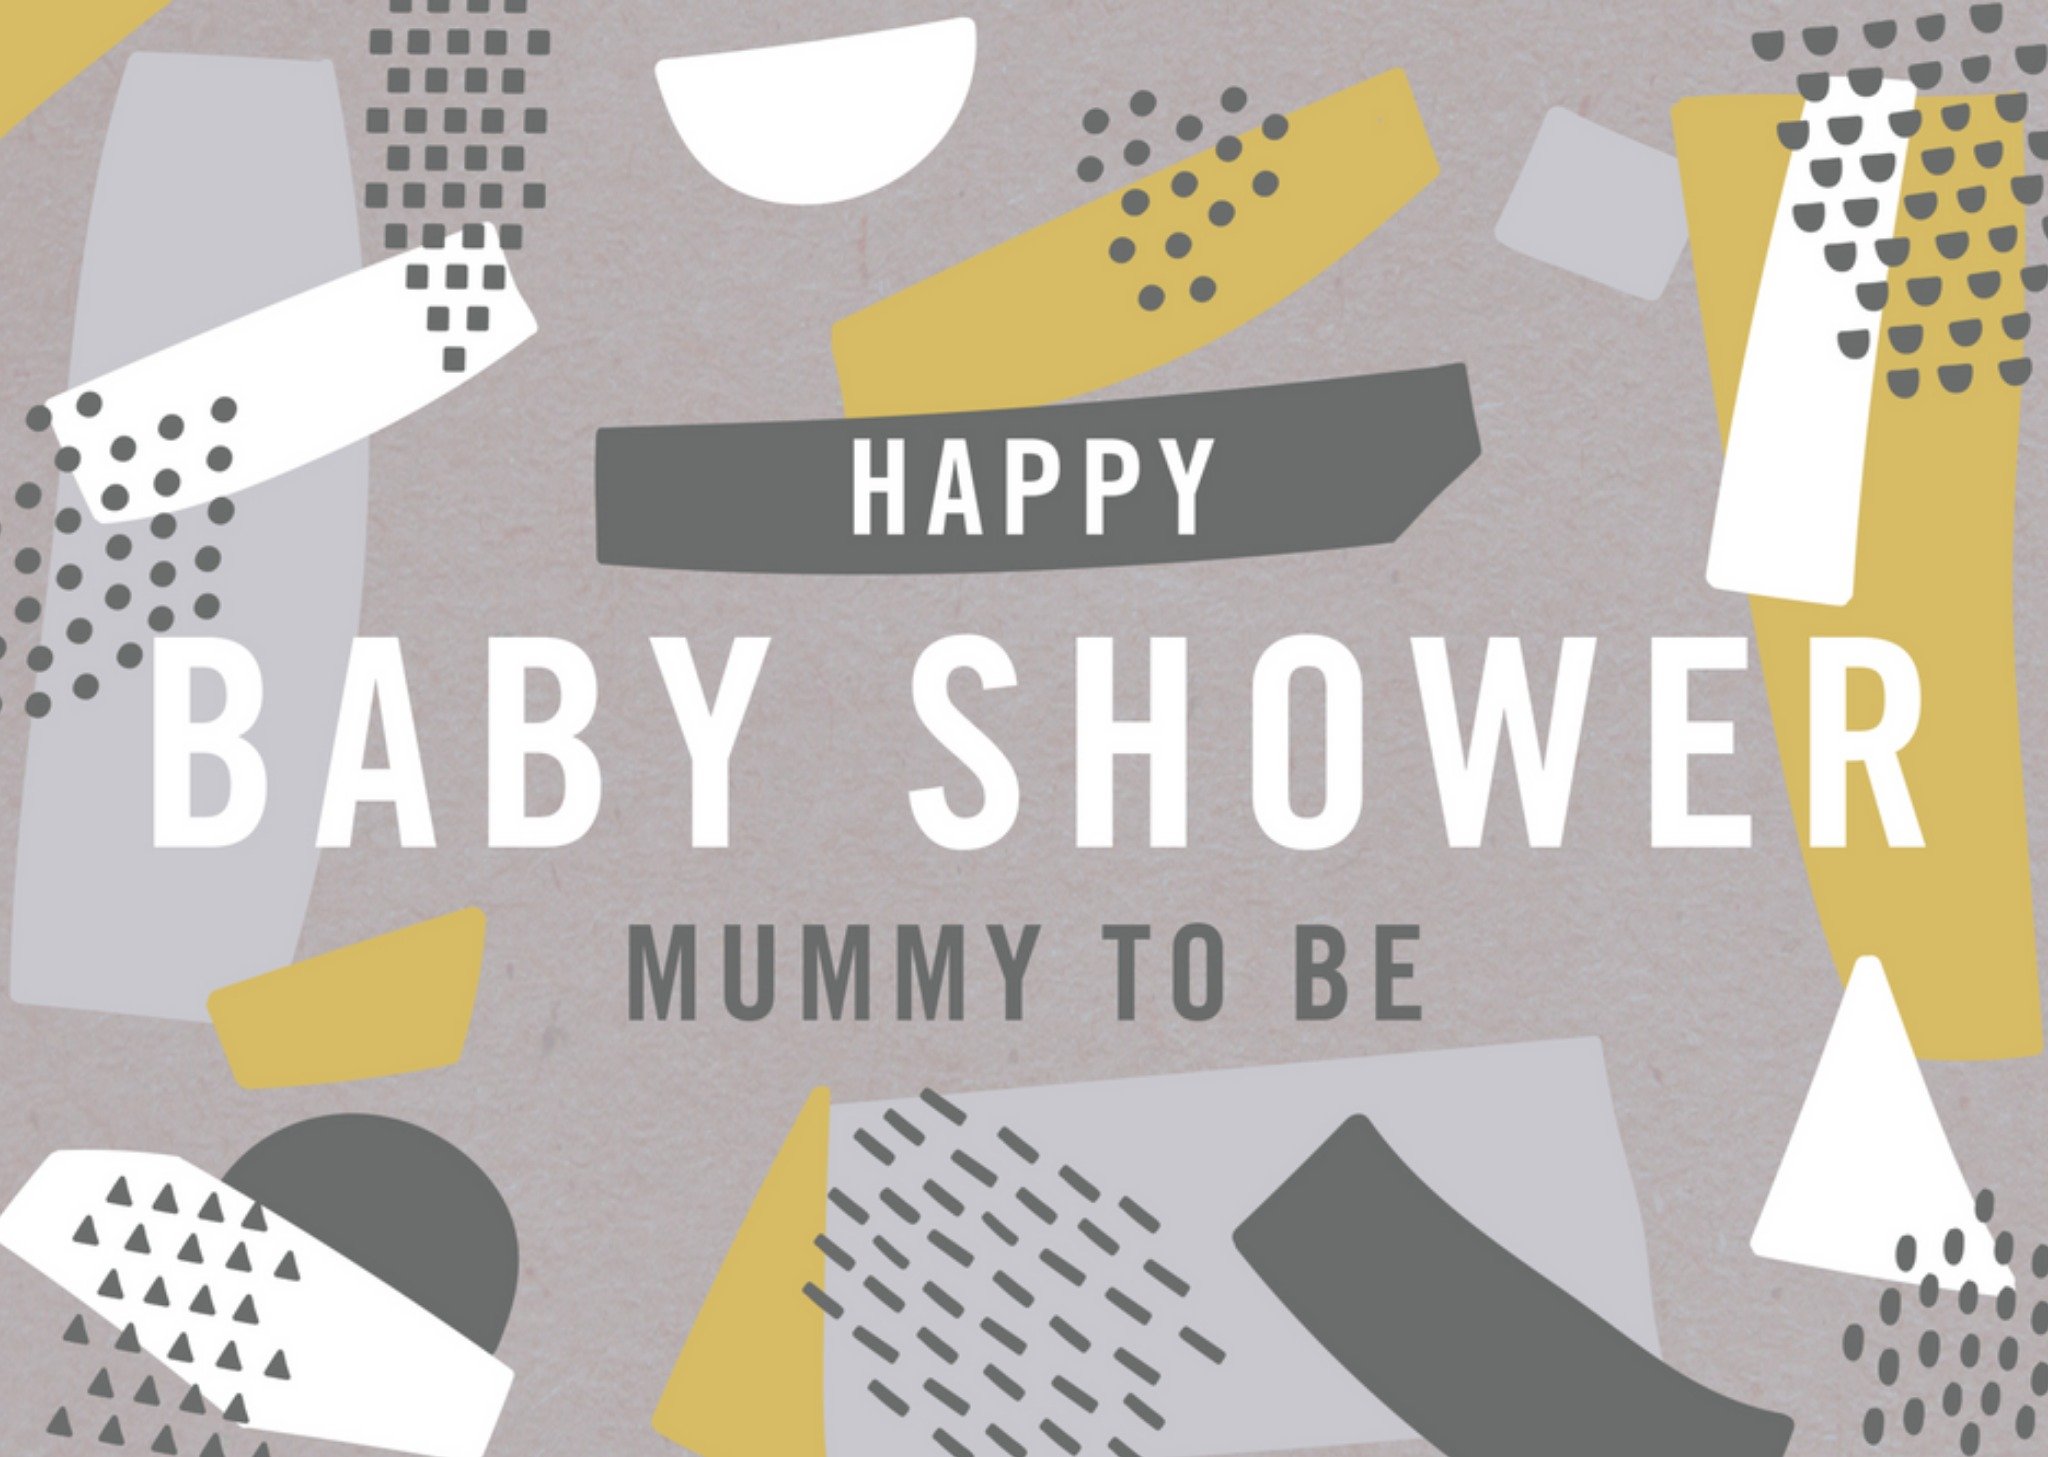 Babyshower - mummy to be